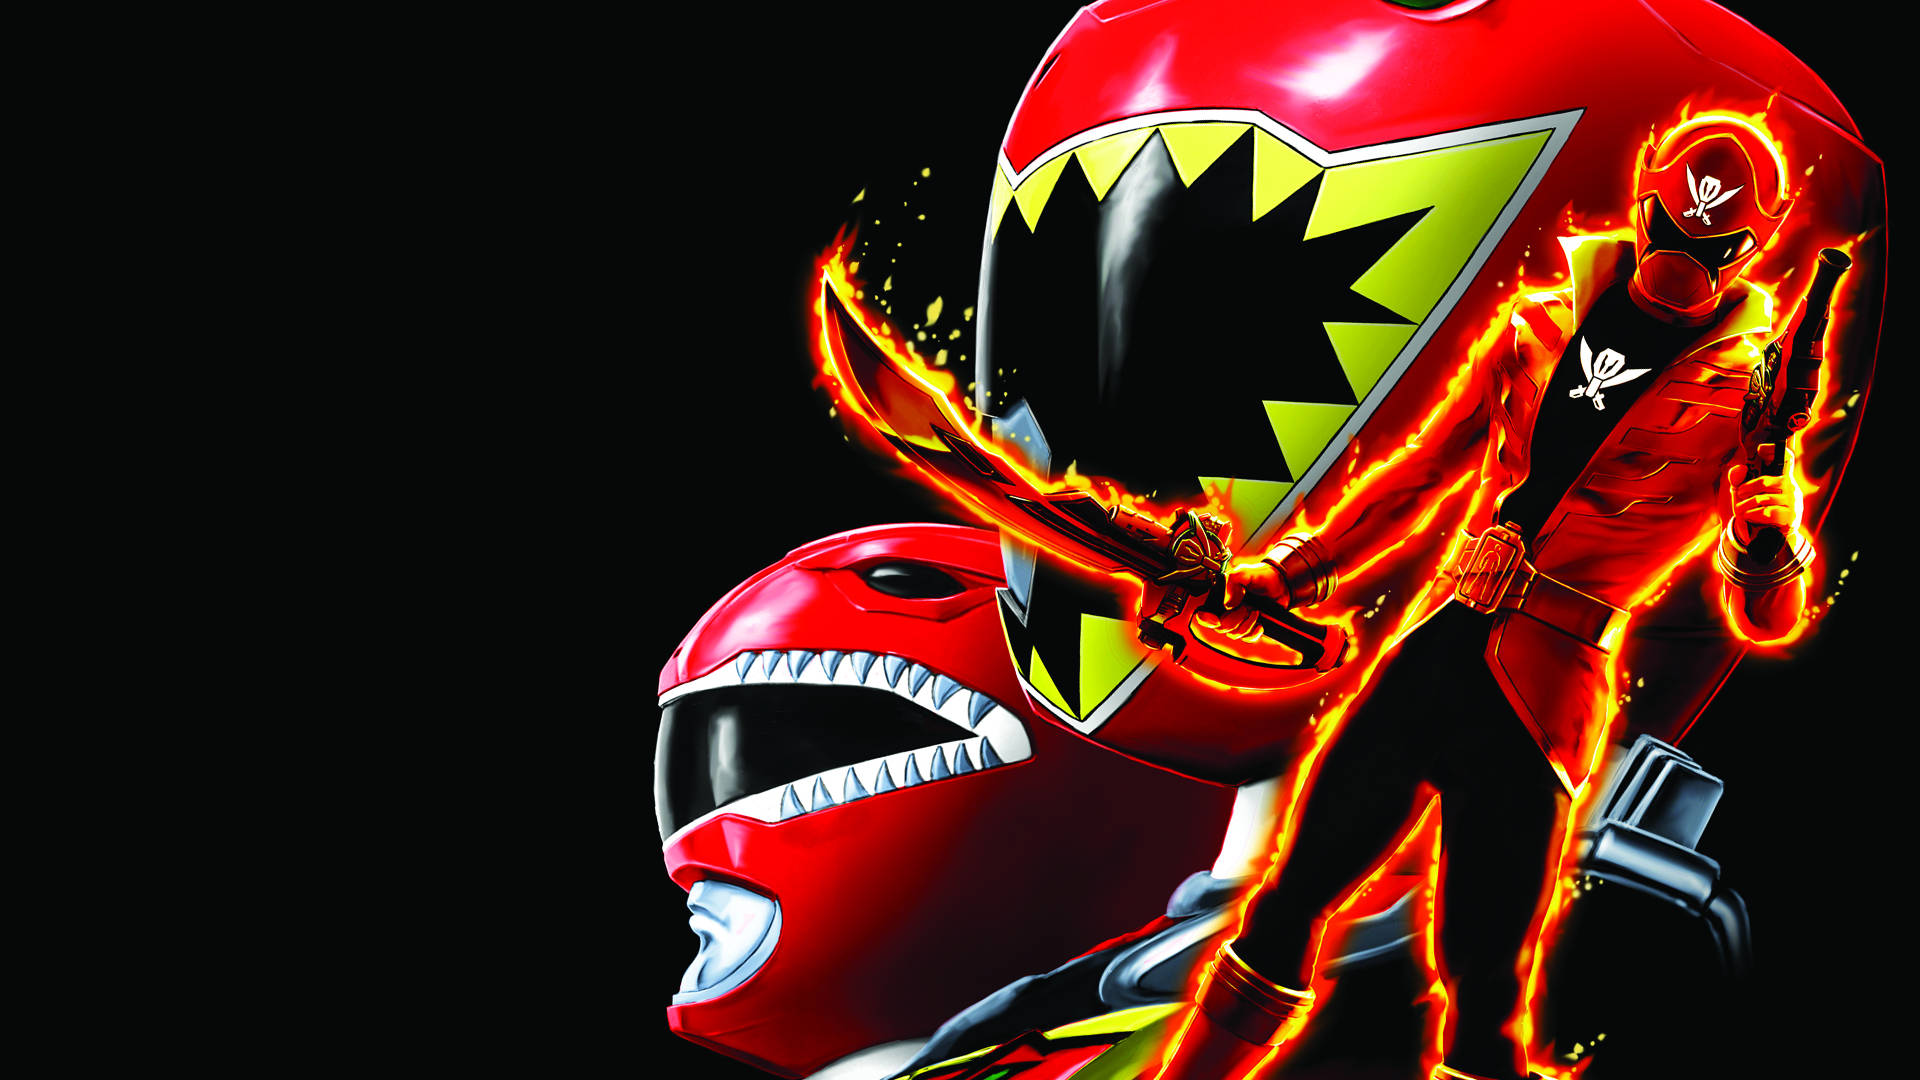 Caption: Red Super Megaforce Power Ranger Action Pose.